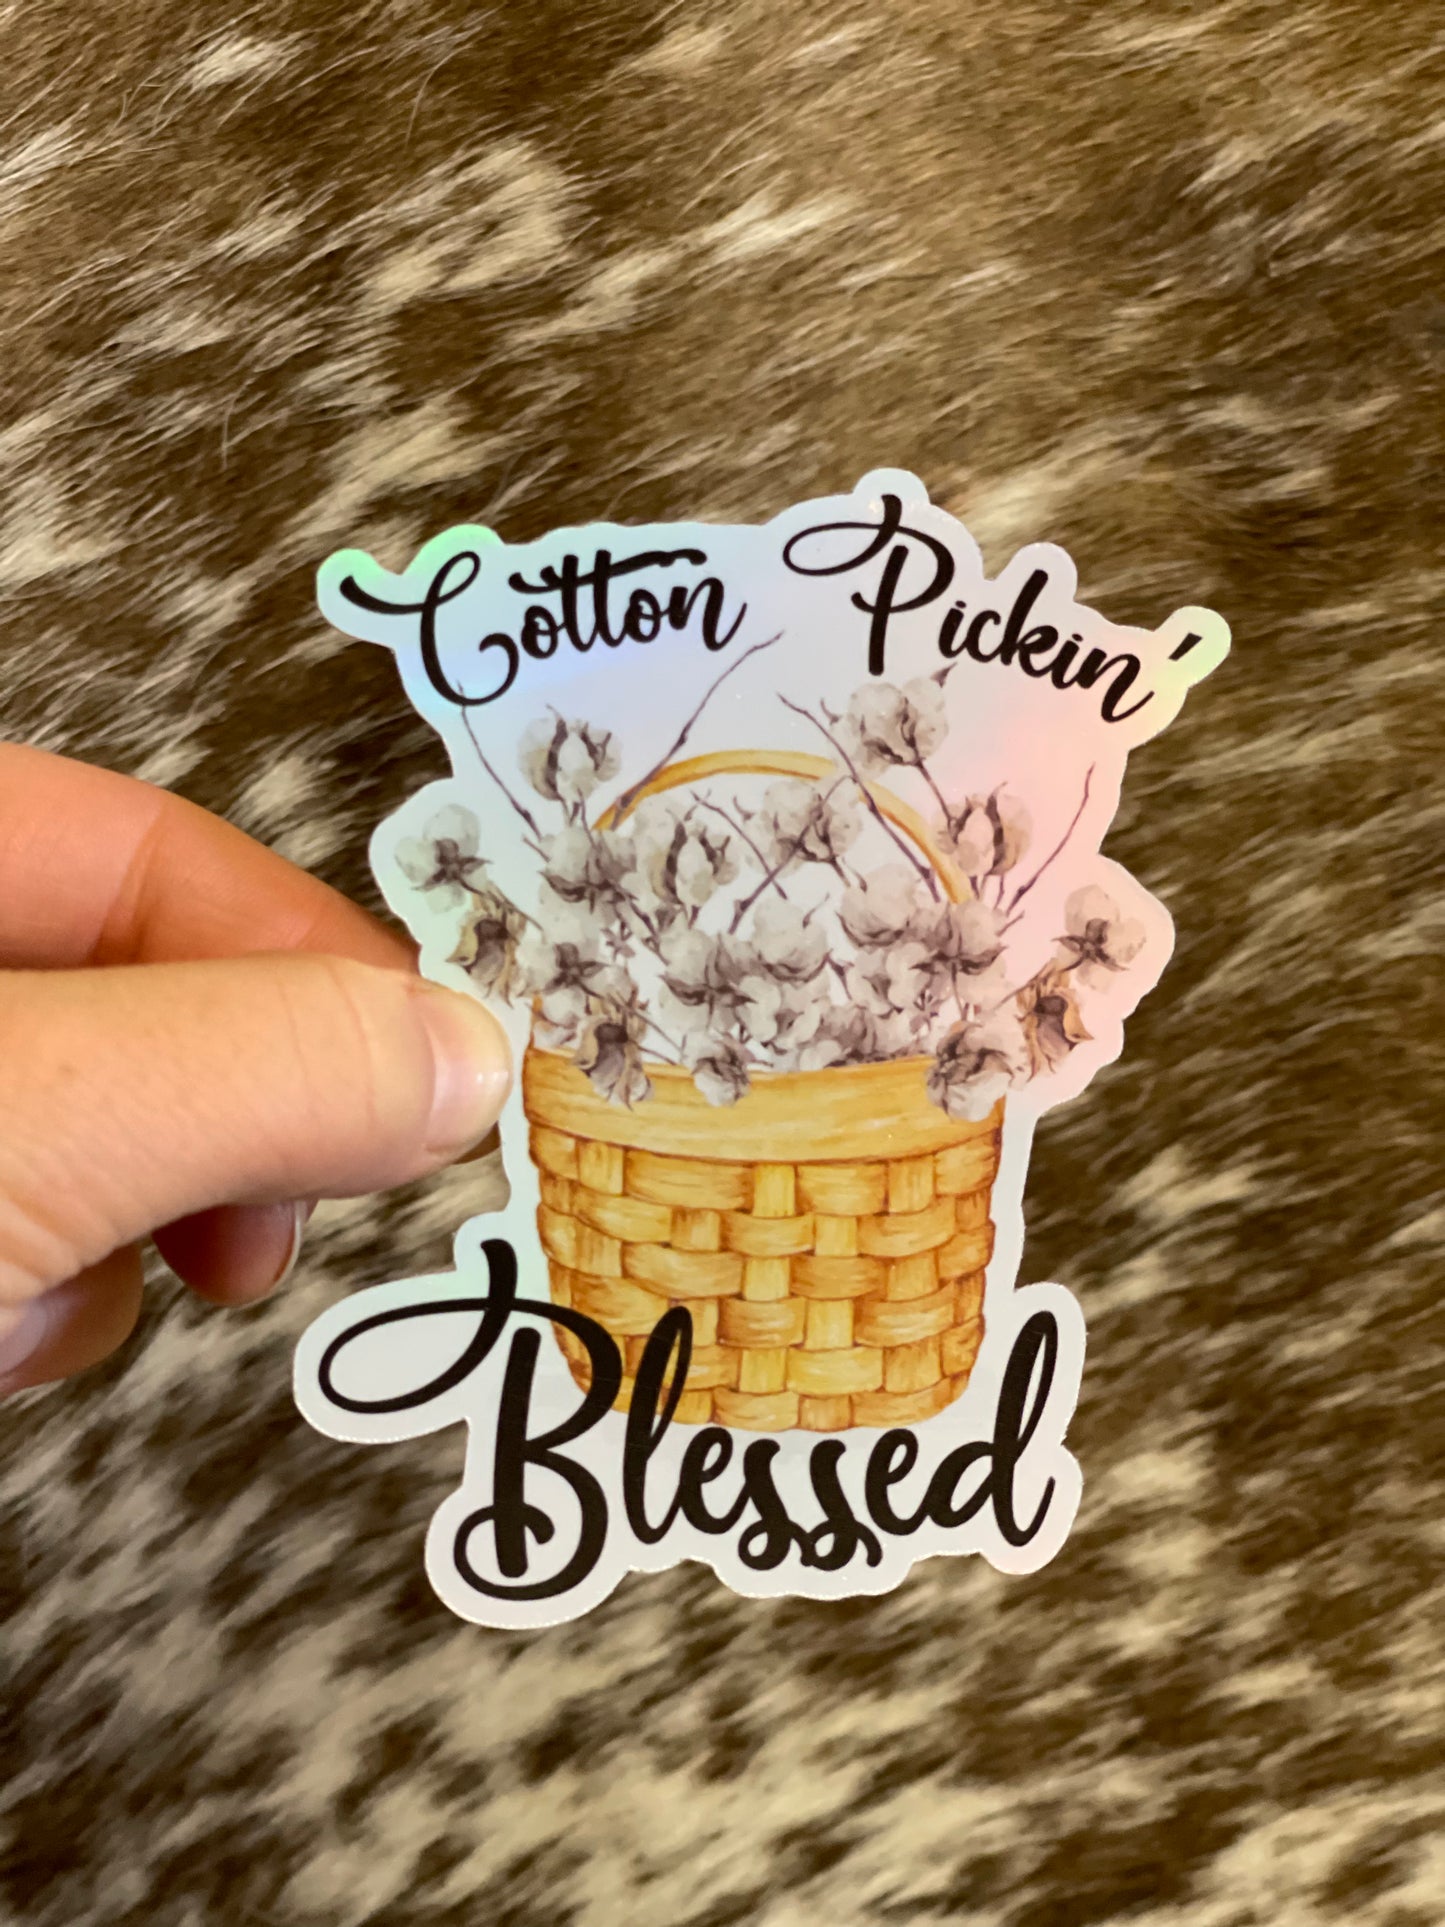 Cotton Picken Blessed Sticker